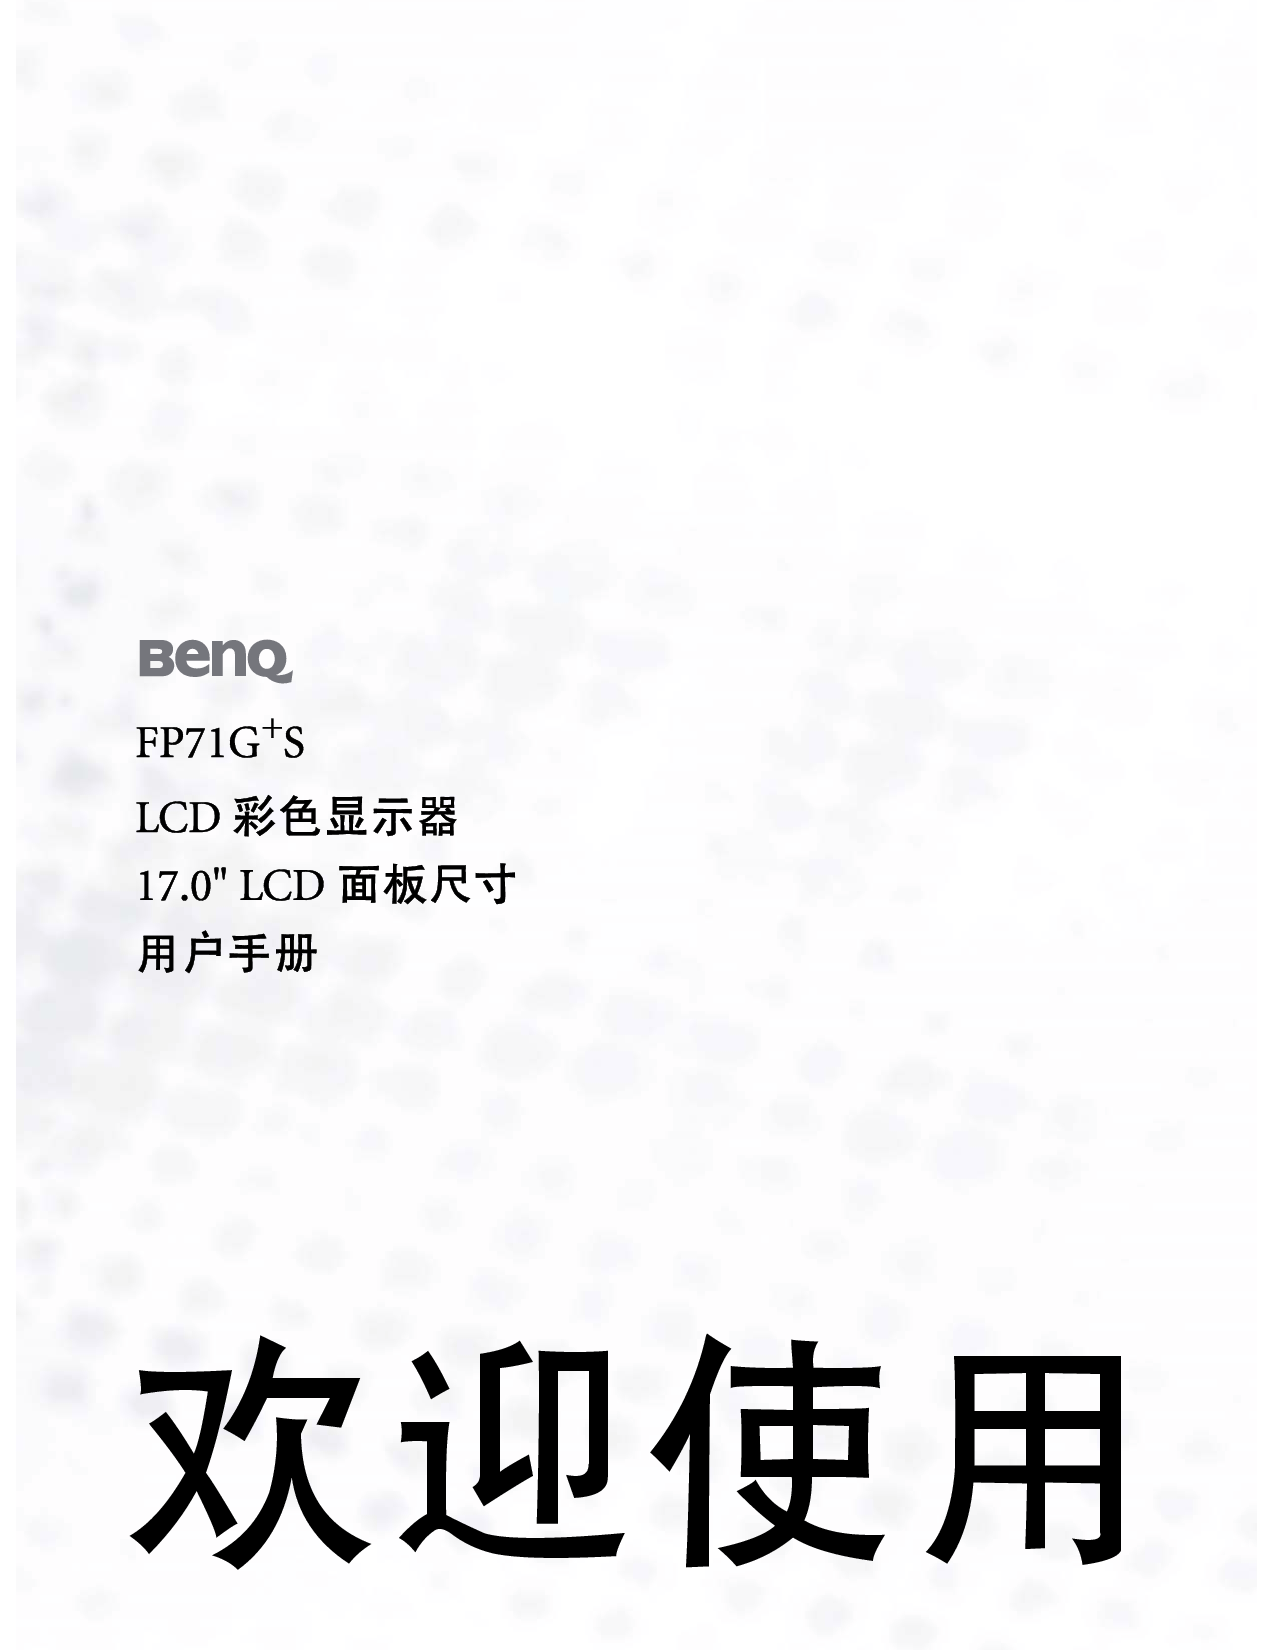 明基 Benq FP71G+S 使用手册 封面